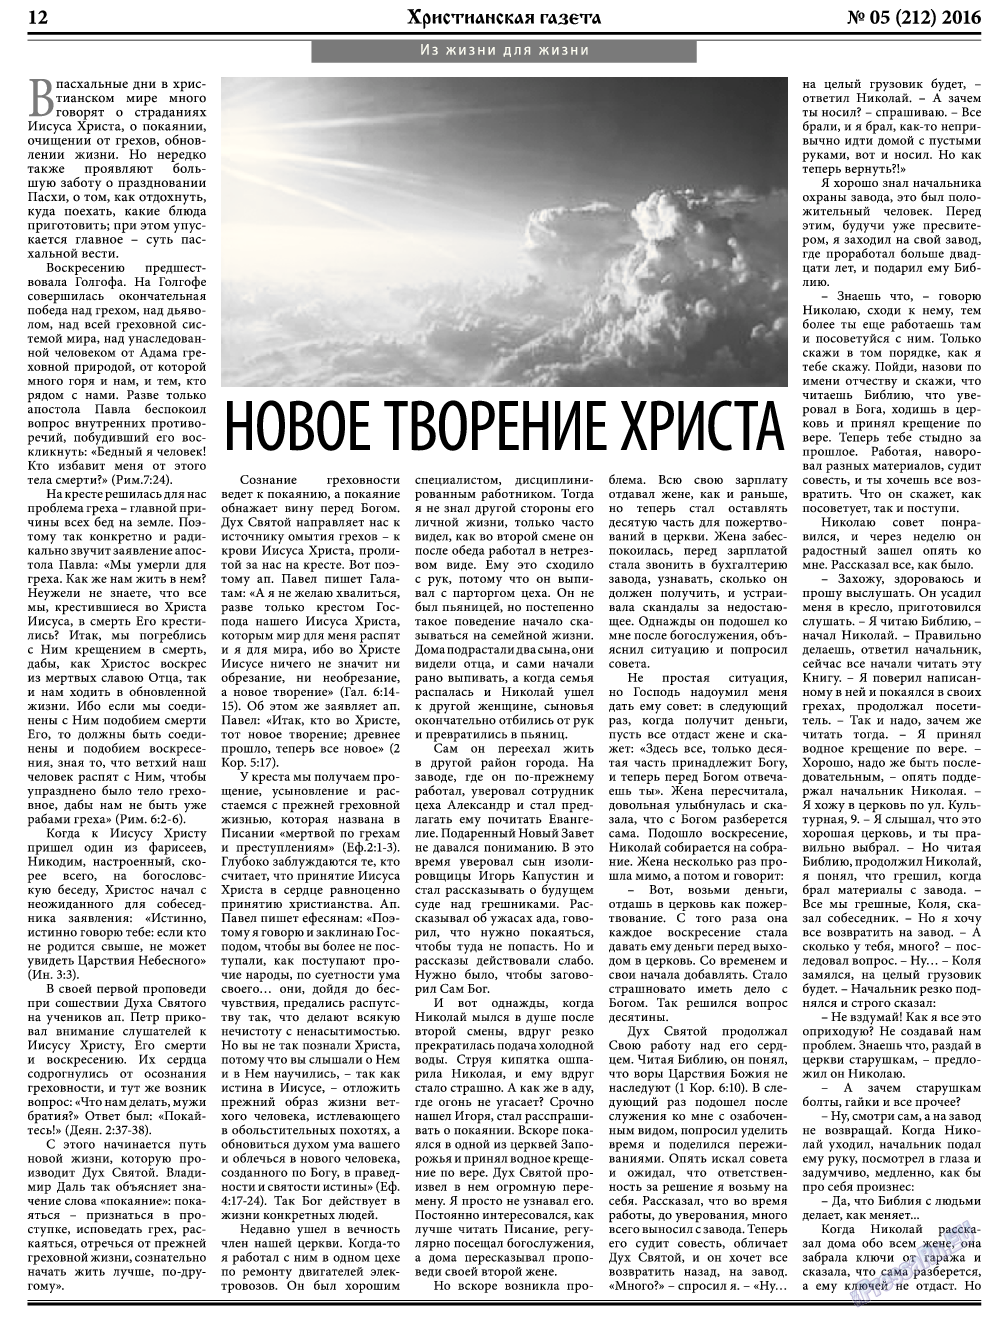 Христианская газета, газета. 2016 №5 стр.12